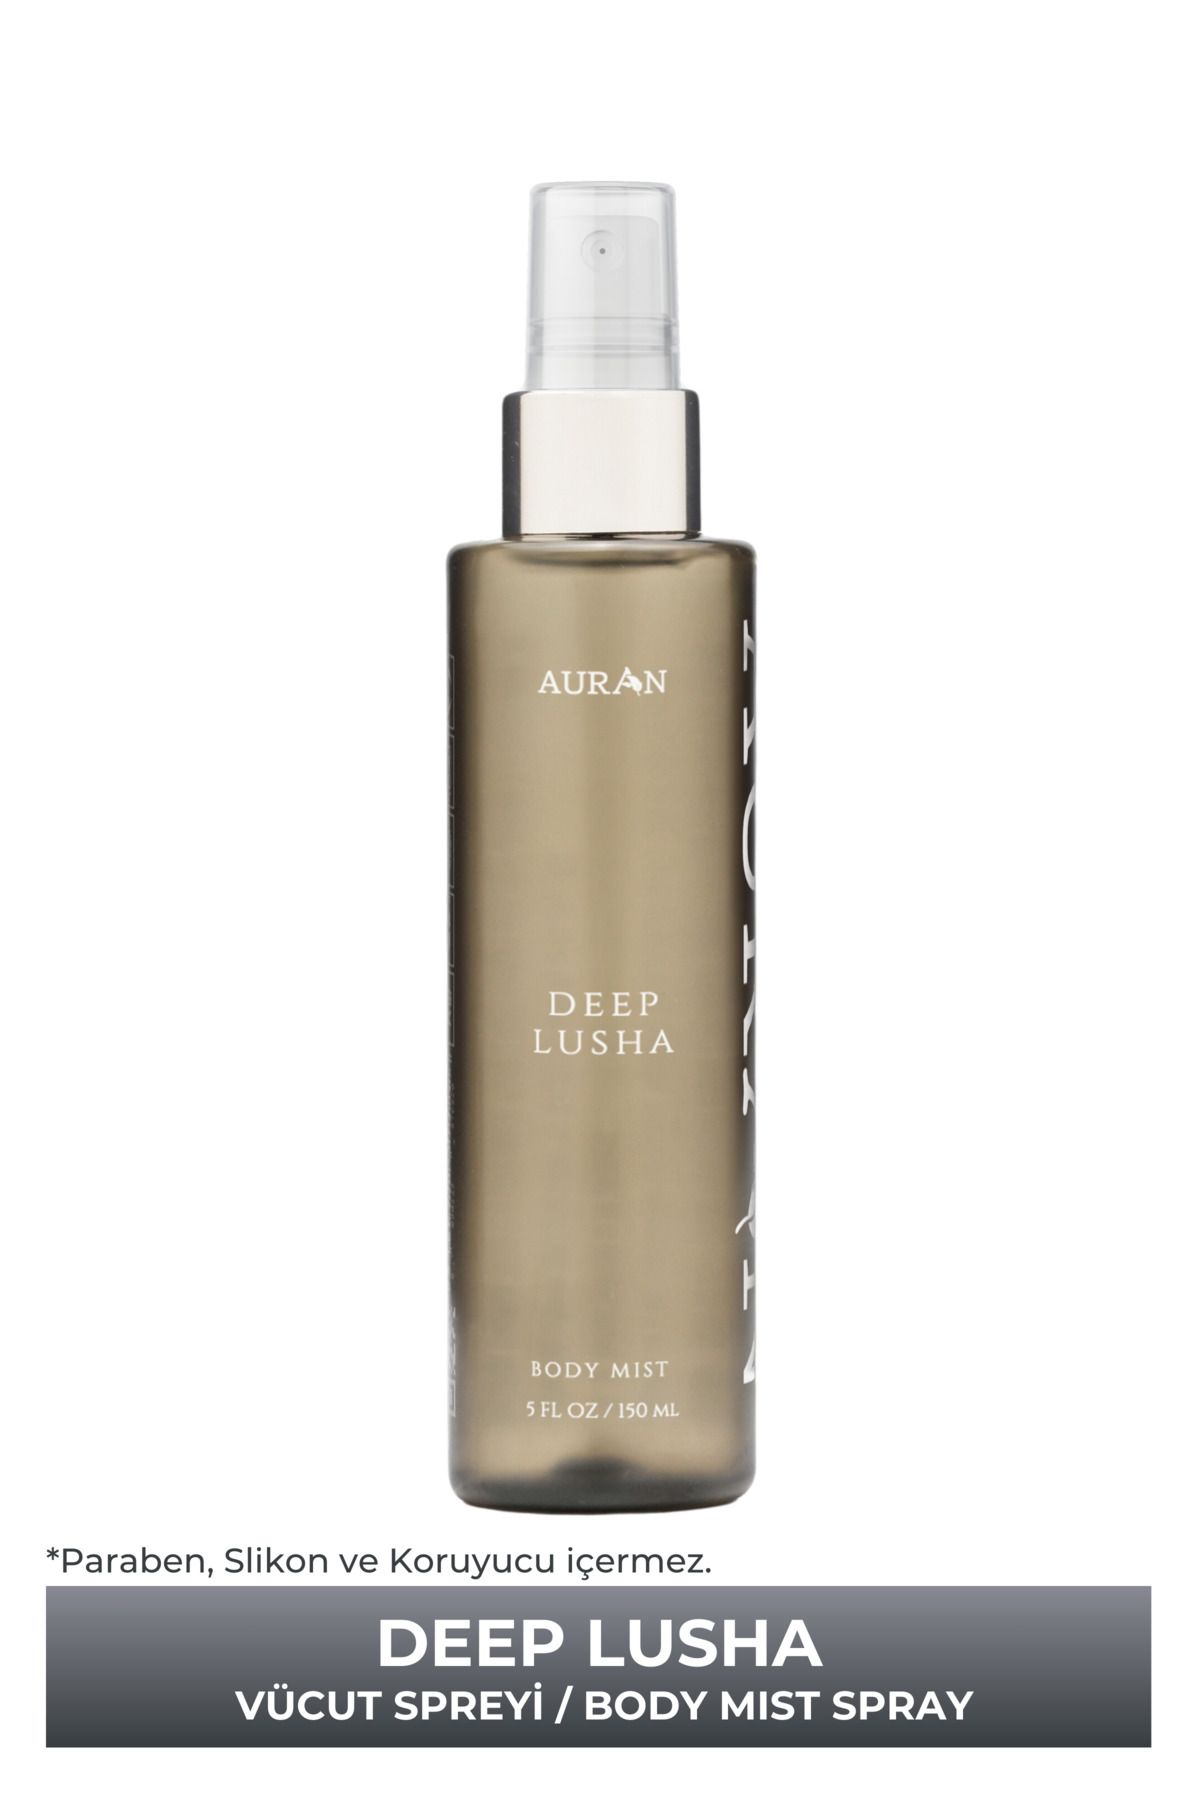 AURAN Deep Lusha Parfümlü Kadın Vücut Spreyi Vücut Misti Body Mist Spray 150ml